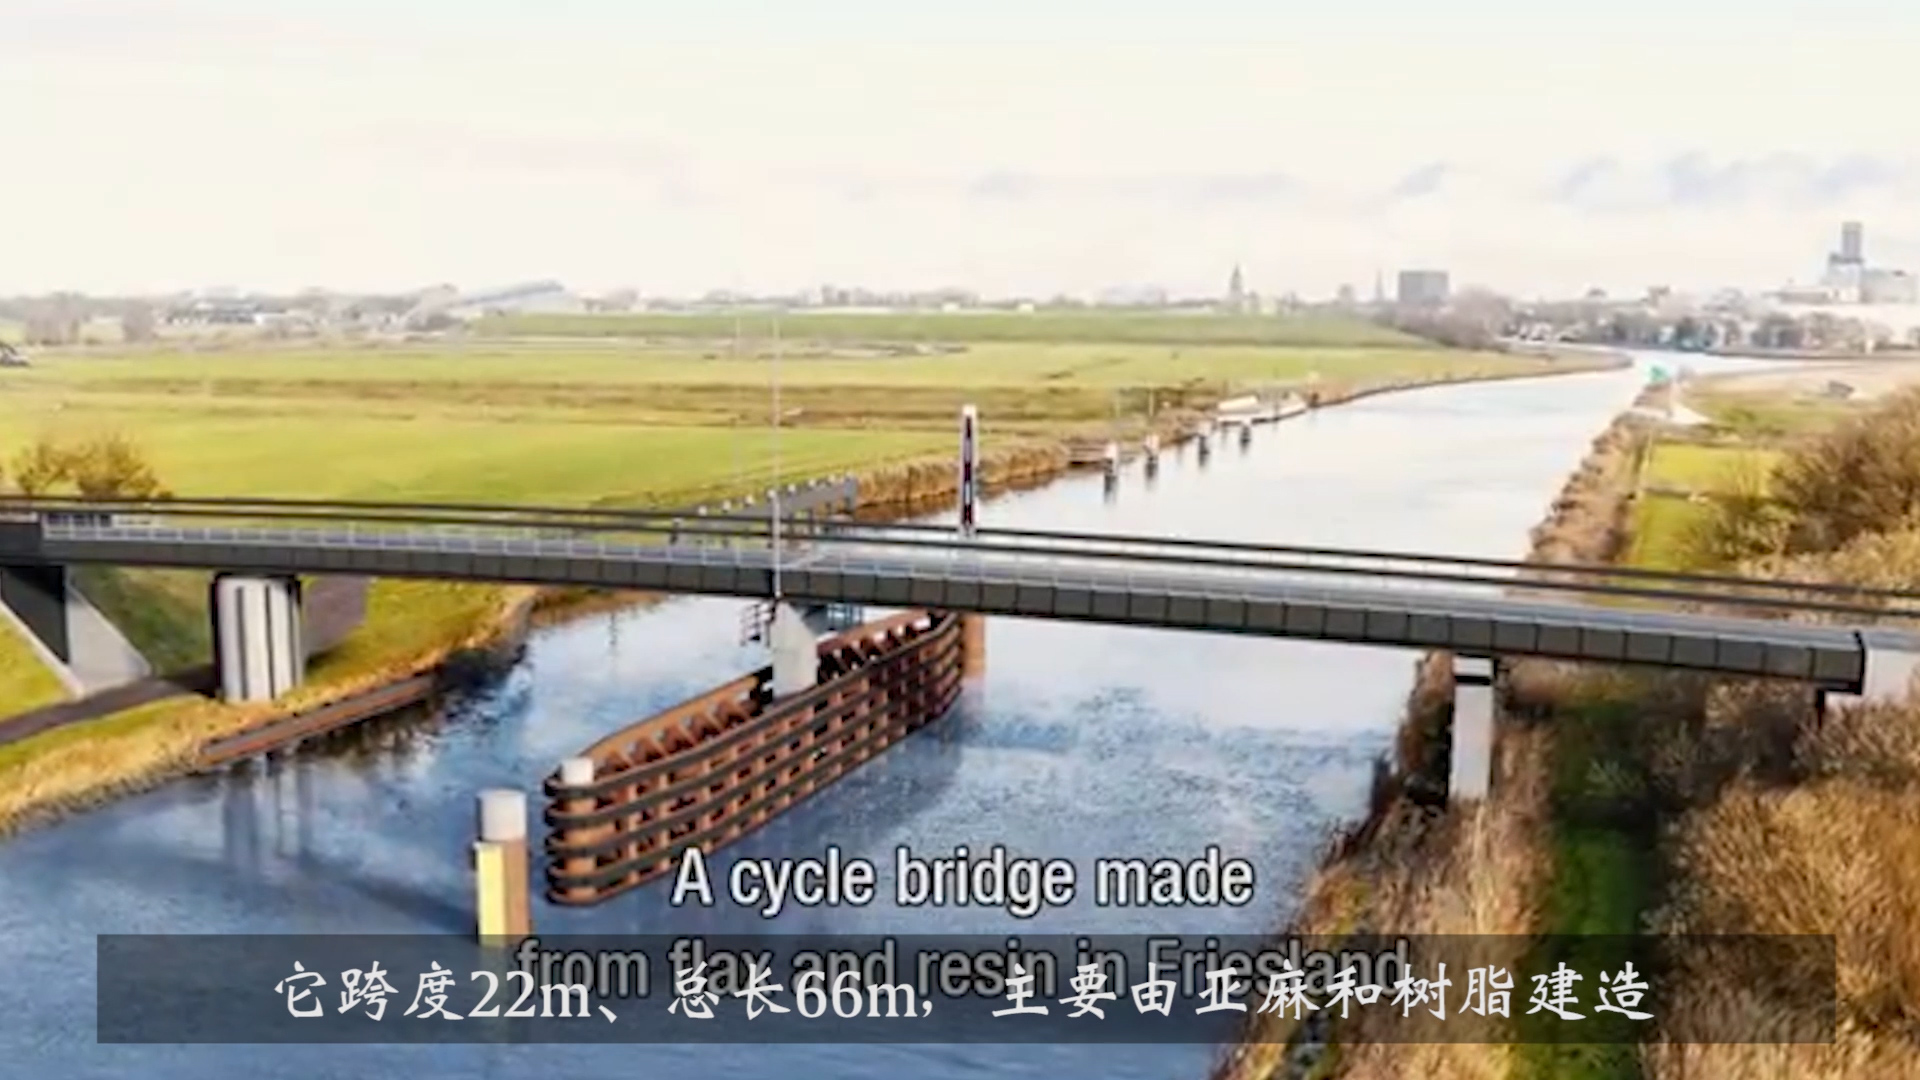 【弗戈工业趣闻】百年后即降解的生物复合材料桥